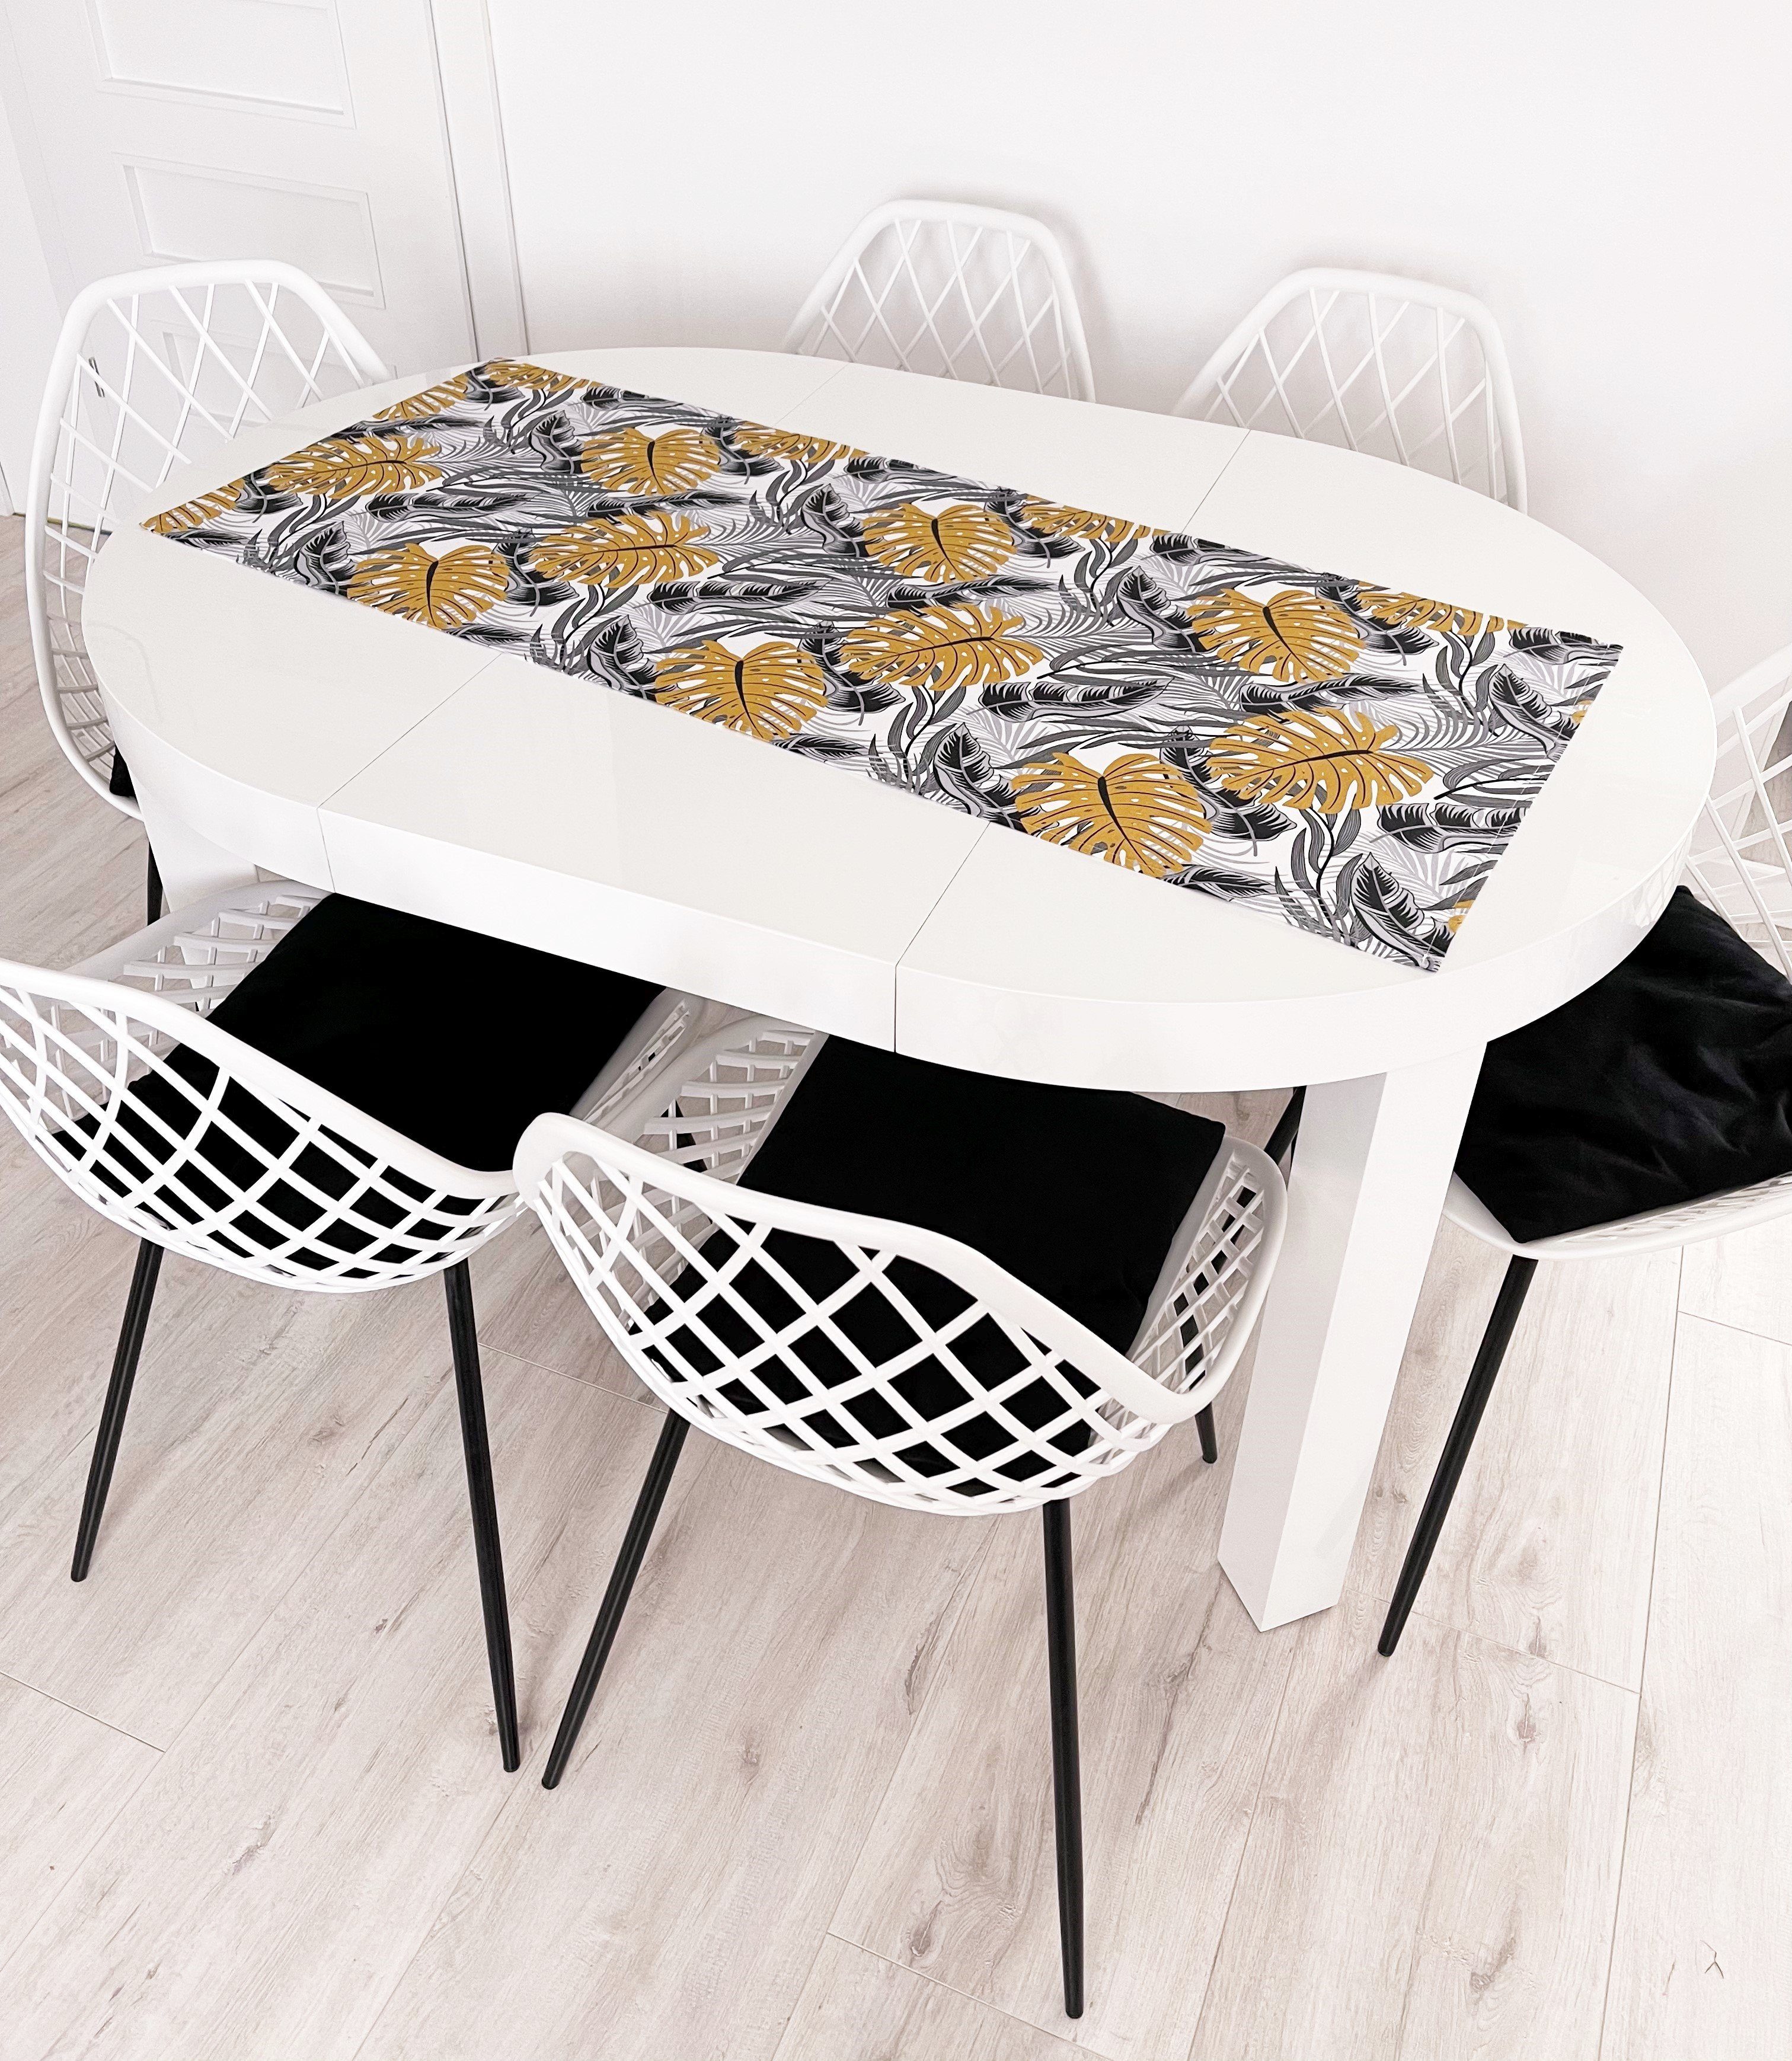 RoKo-Textilien Tischläufer Tischläufer Tischdecke Tischlaeufer 100% Maßen gedeckter 18 Baumwolle in verfügbar Tisch